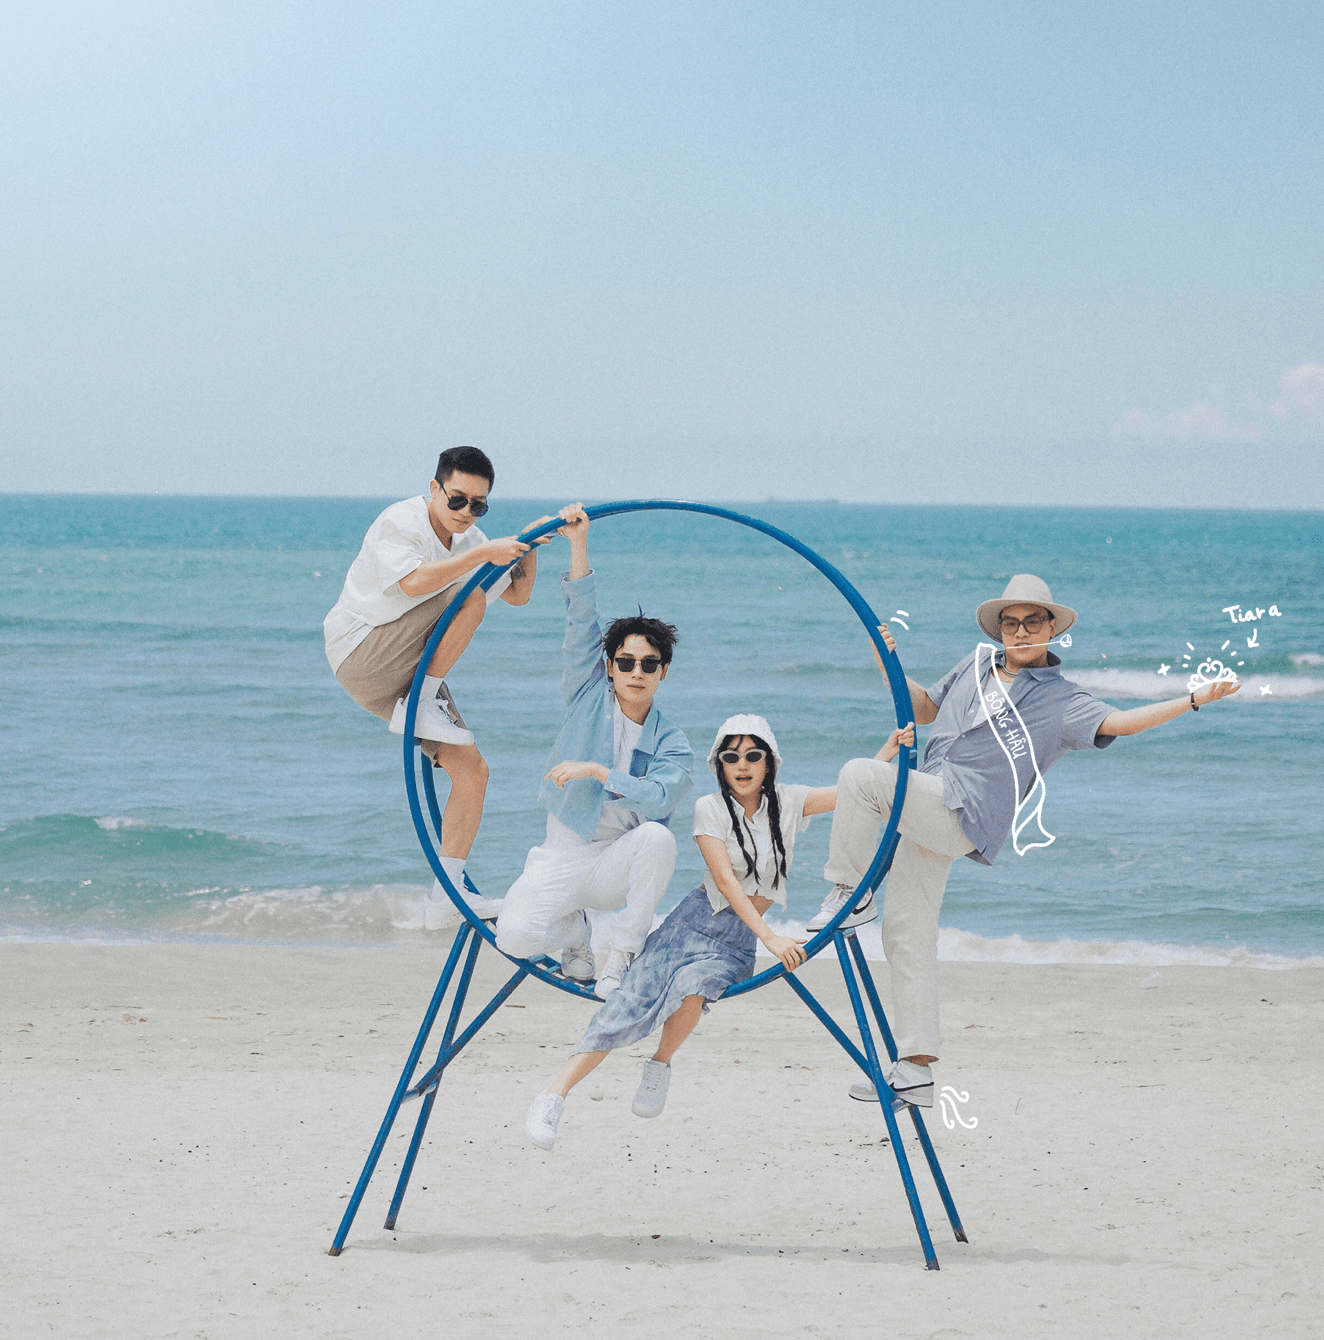 Trúc Nhân, Orange, Anh Tú và Hứa Kim Tuyền cùng vẽ “bức tranh" siêu dễ thương trong MV mới